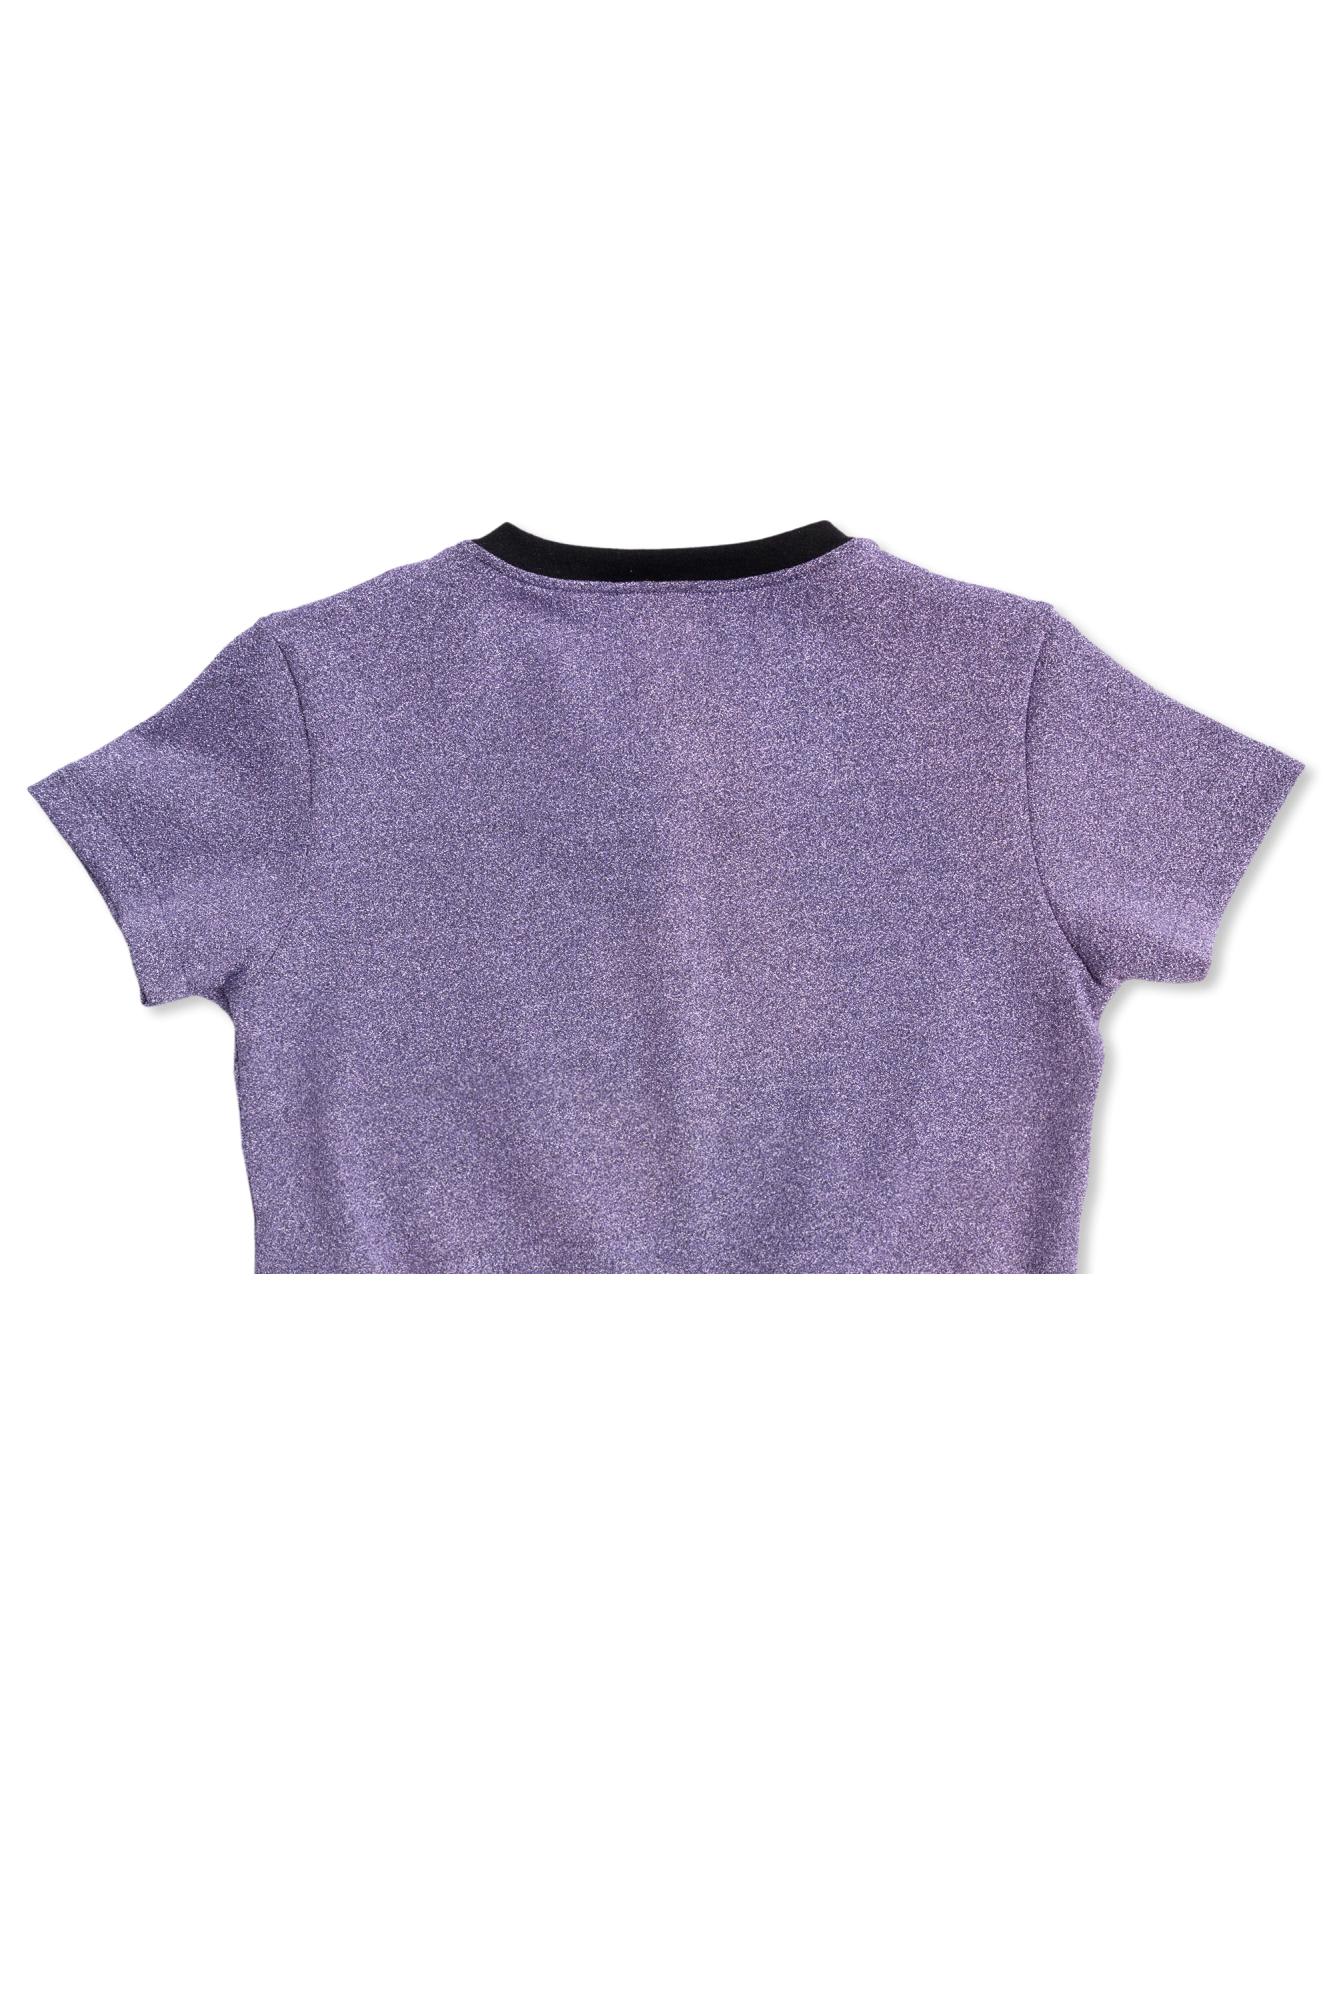 Shop Balmain Kids T-shirt With Logo In Purple